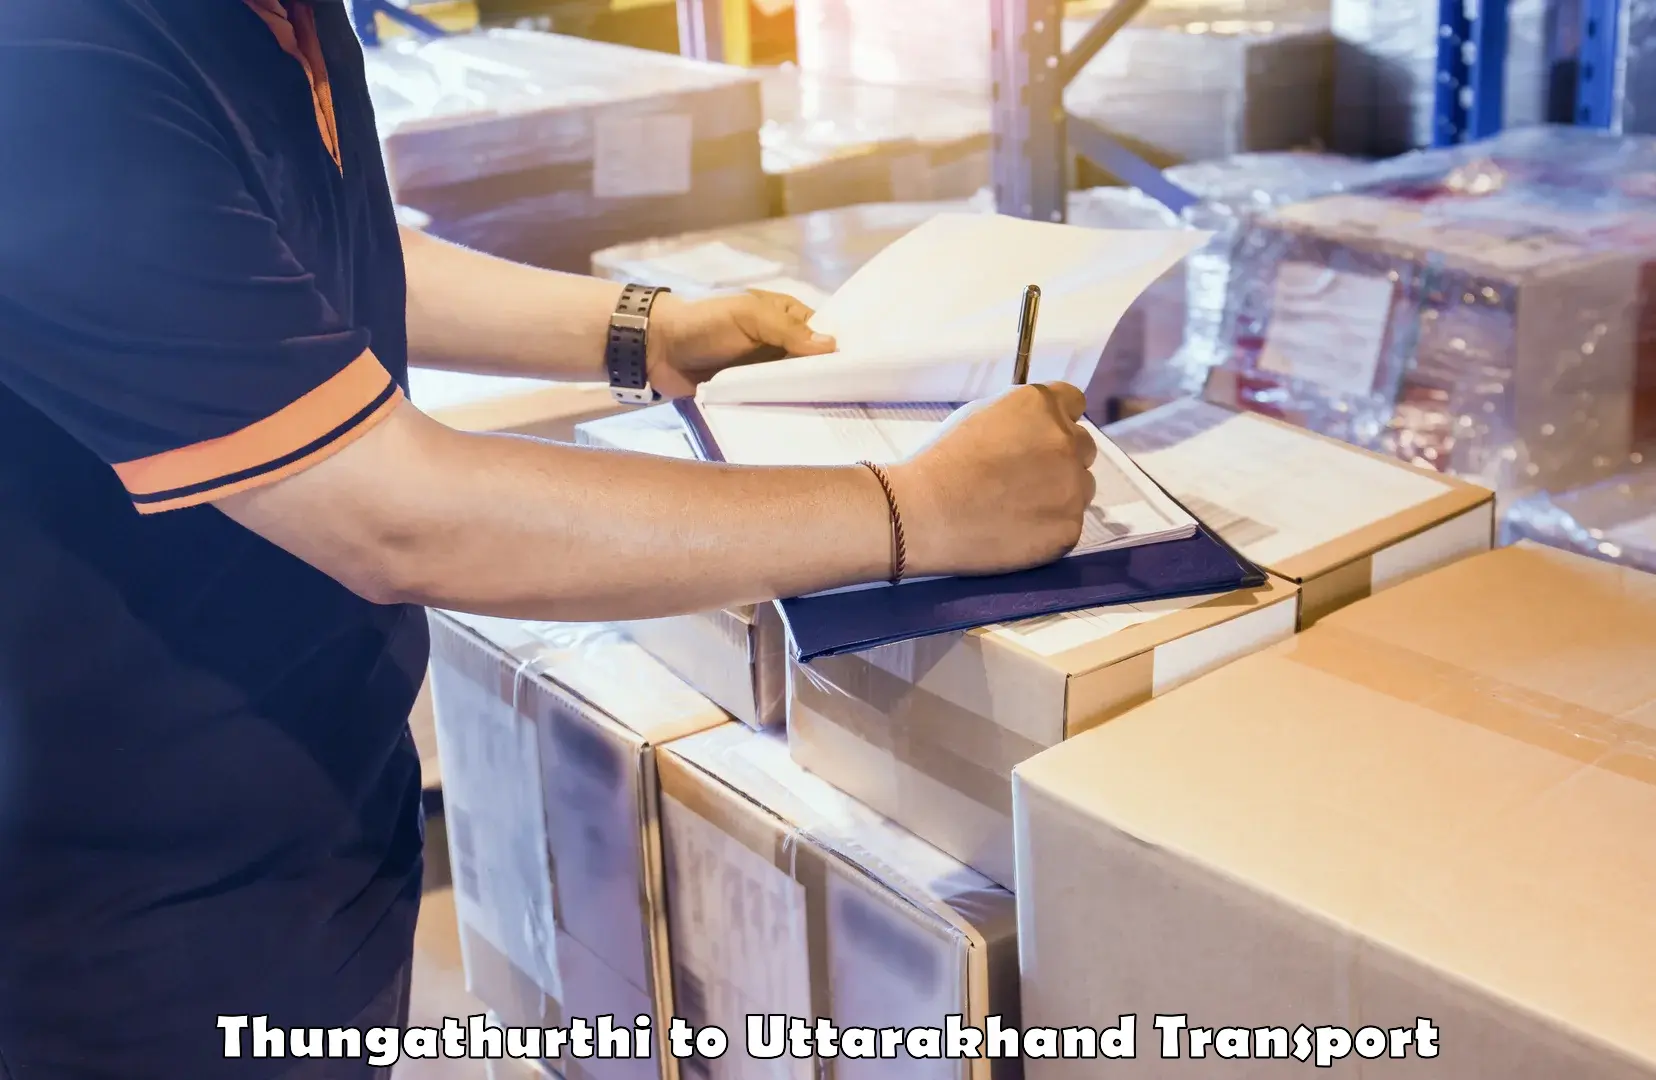 Furniture transport service Thungathurthi to Paithani